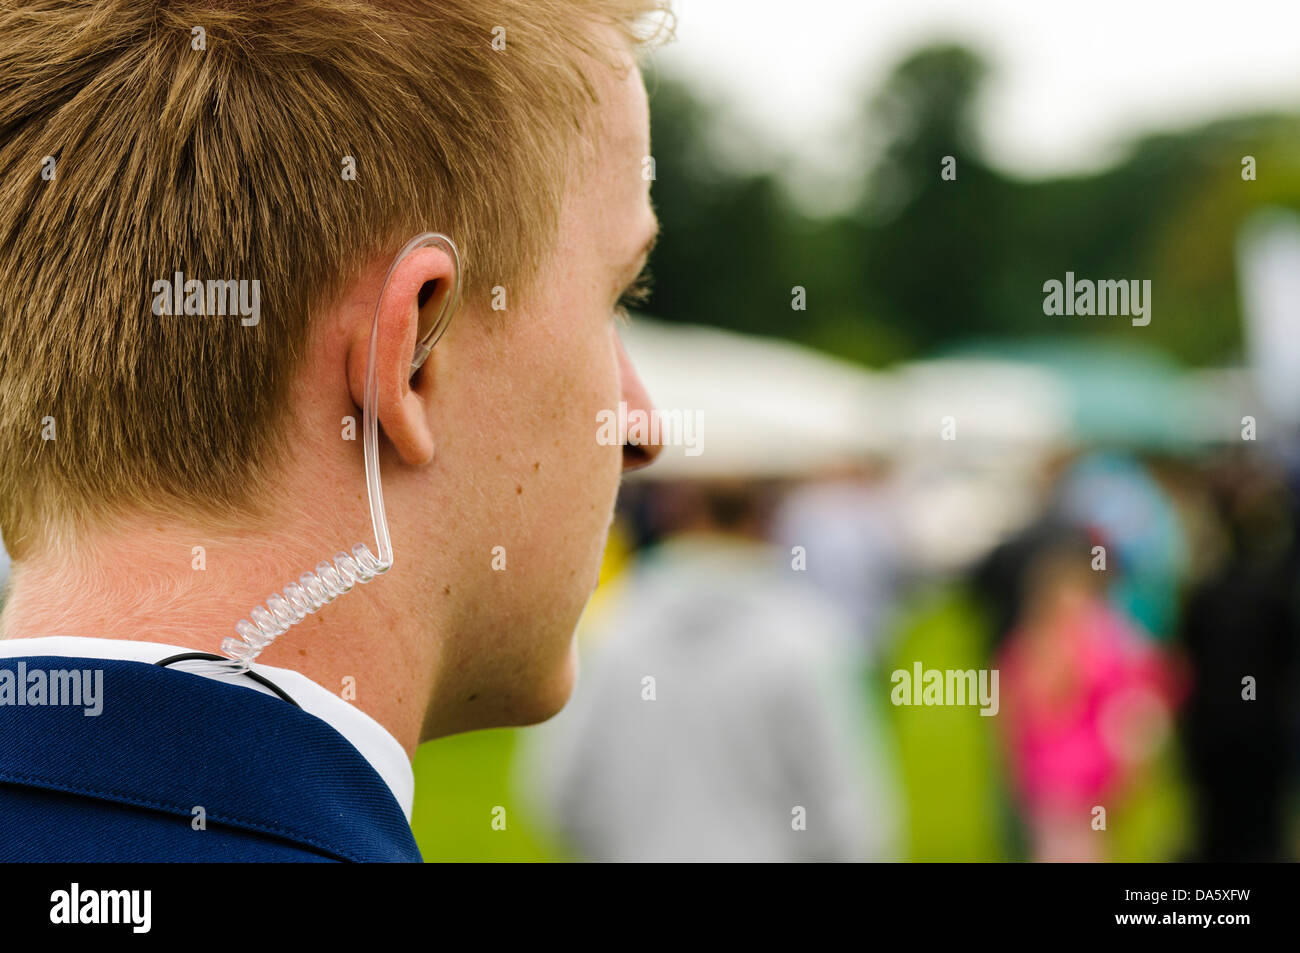 Un jeune gardien de sécurité portant un écouteur enroulé d'écouter sa radio bidirectionnelle Banque D'Images